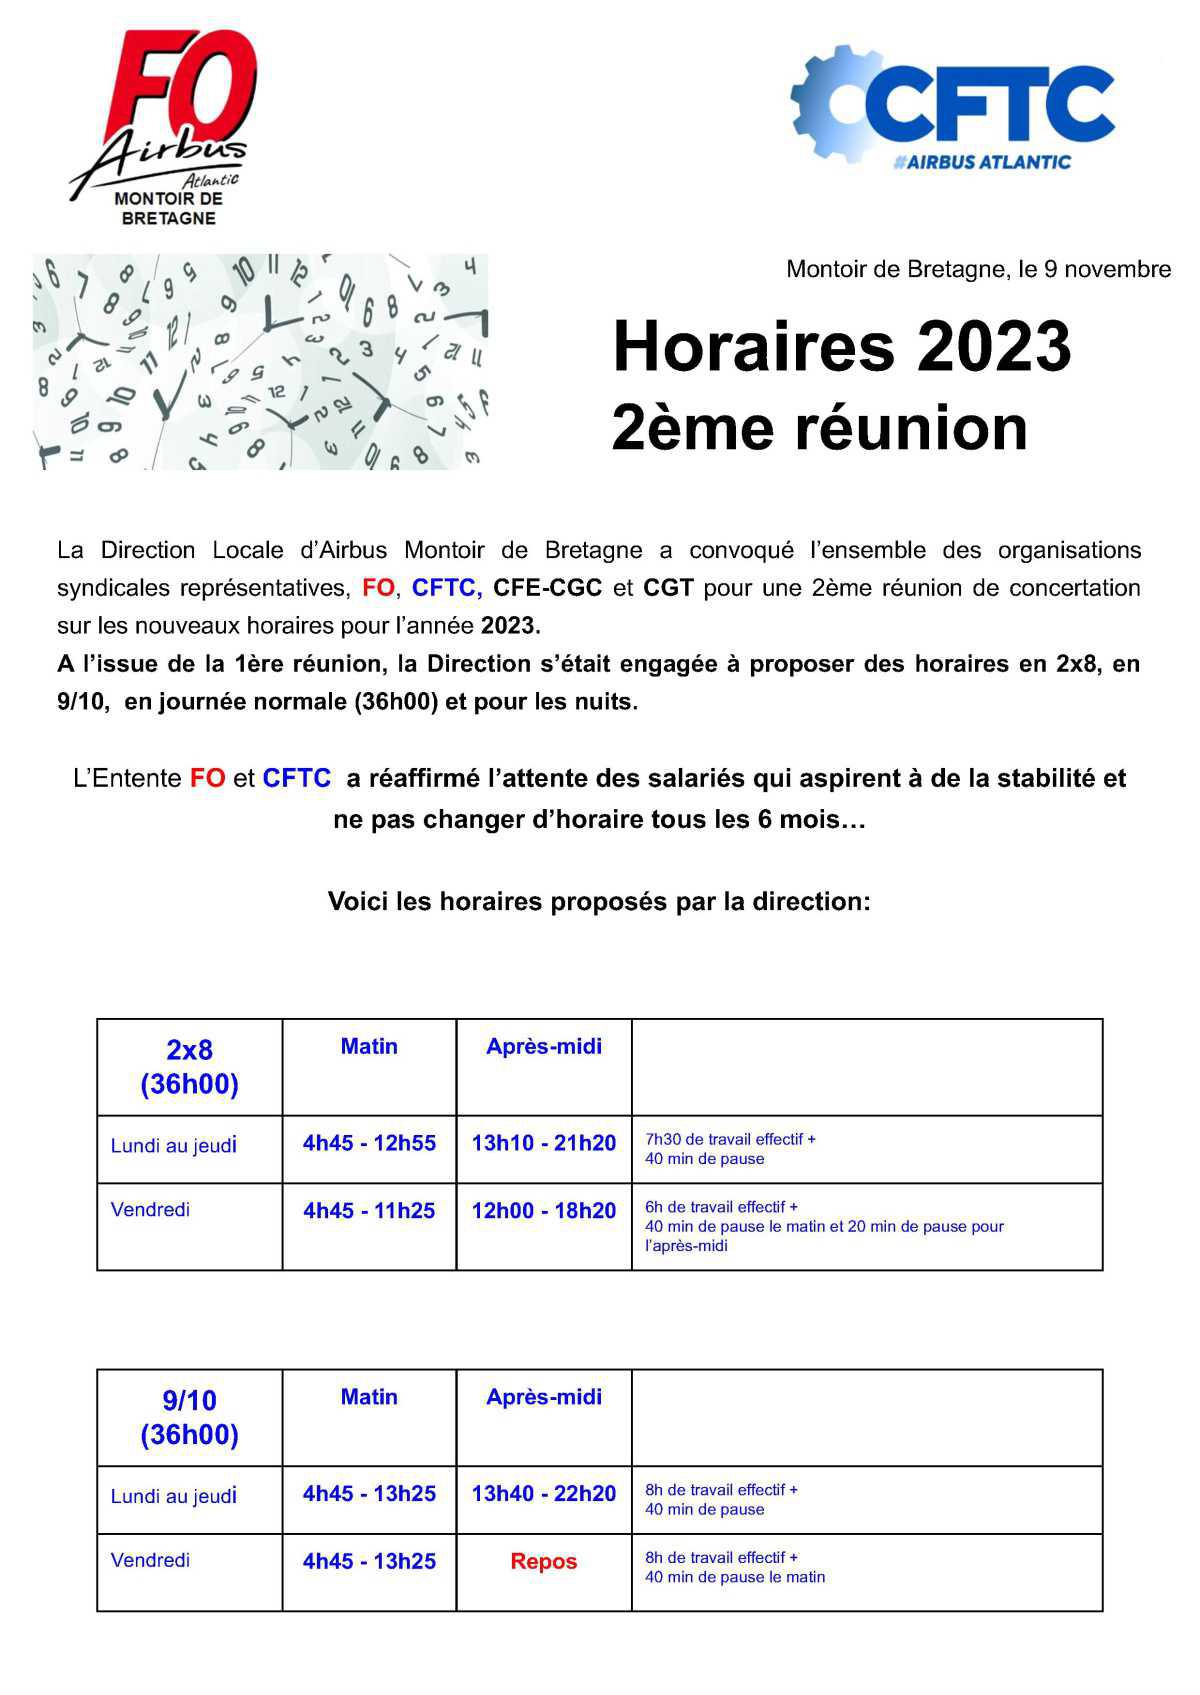 Horaires 2023 : 2e réunion